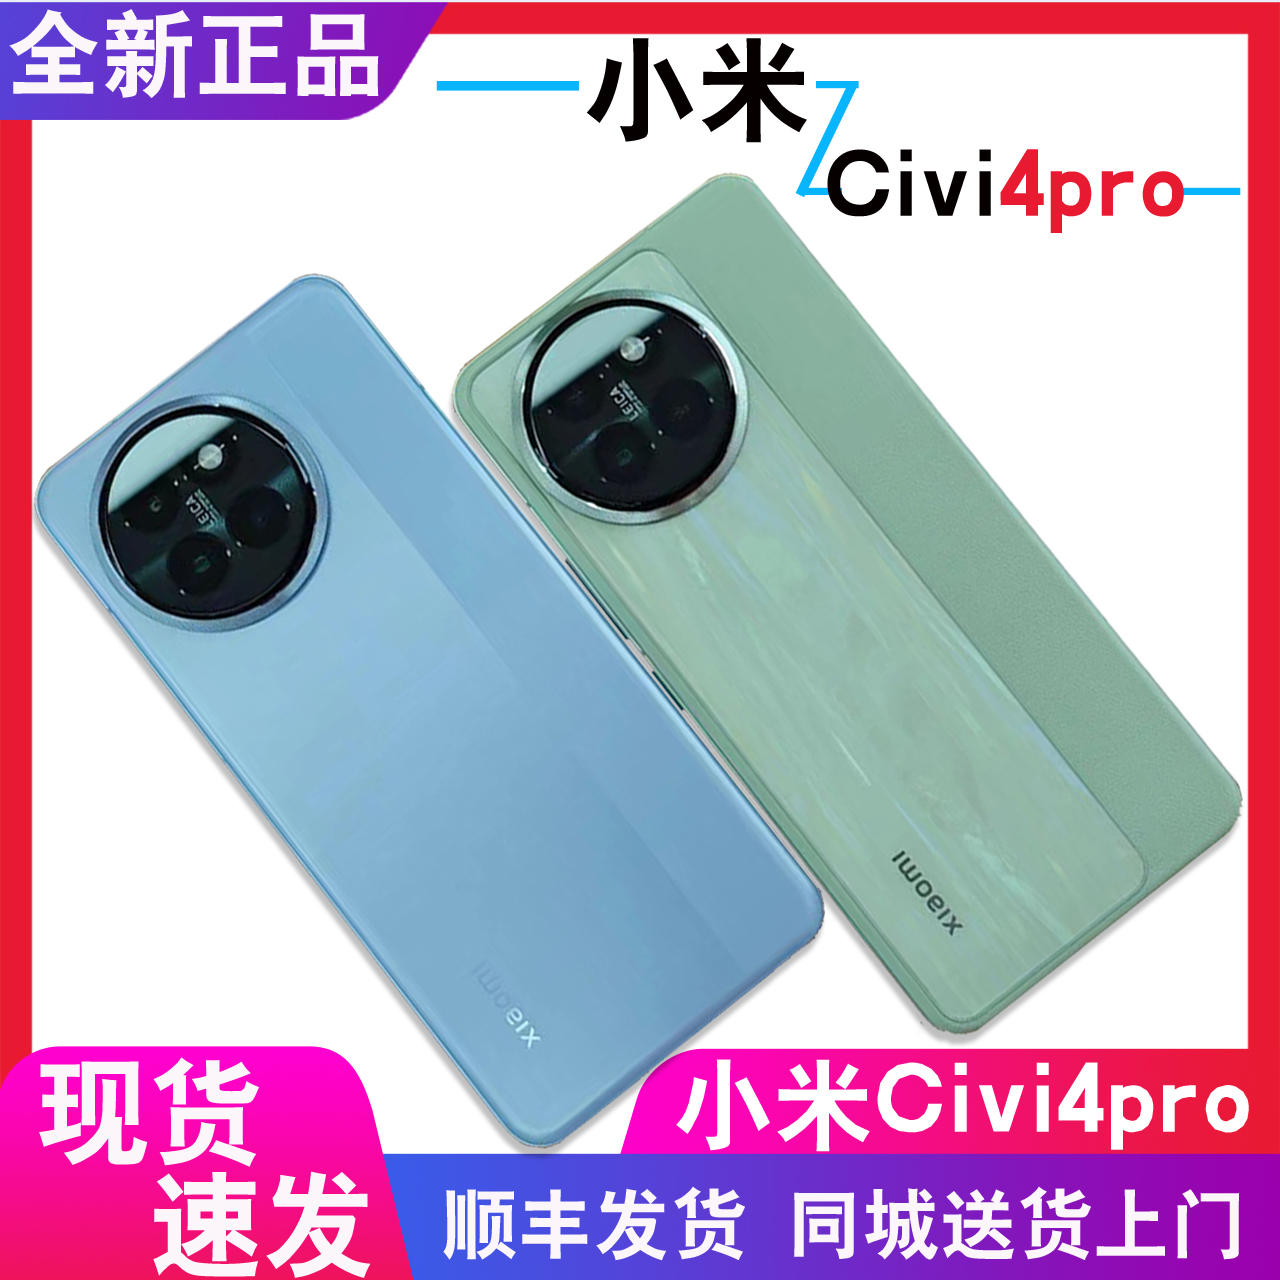 原封现货+分期付款MIUI/小米 Xiaomi Civi 4 Pro官方正品徕卡手机